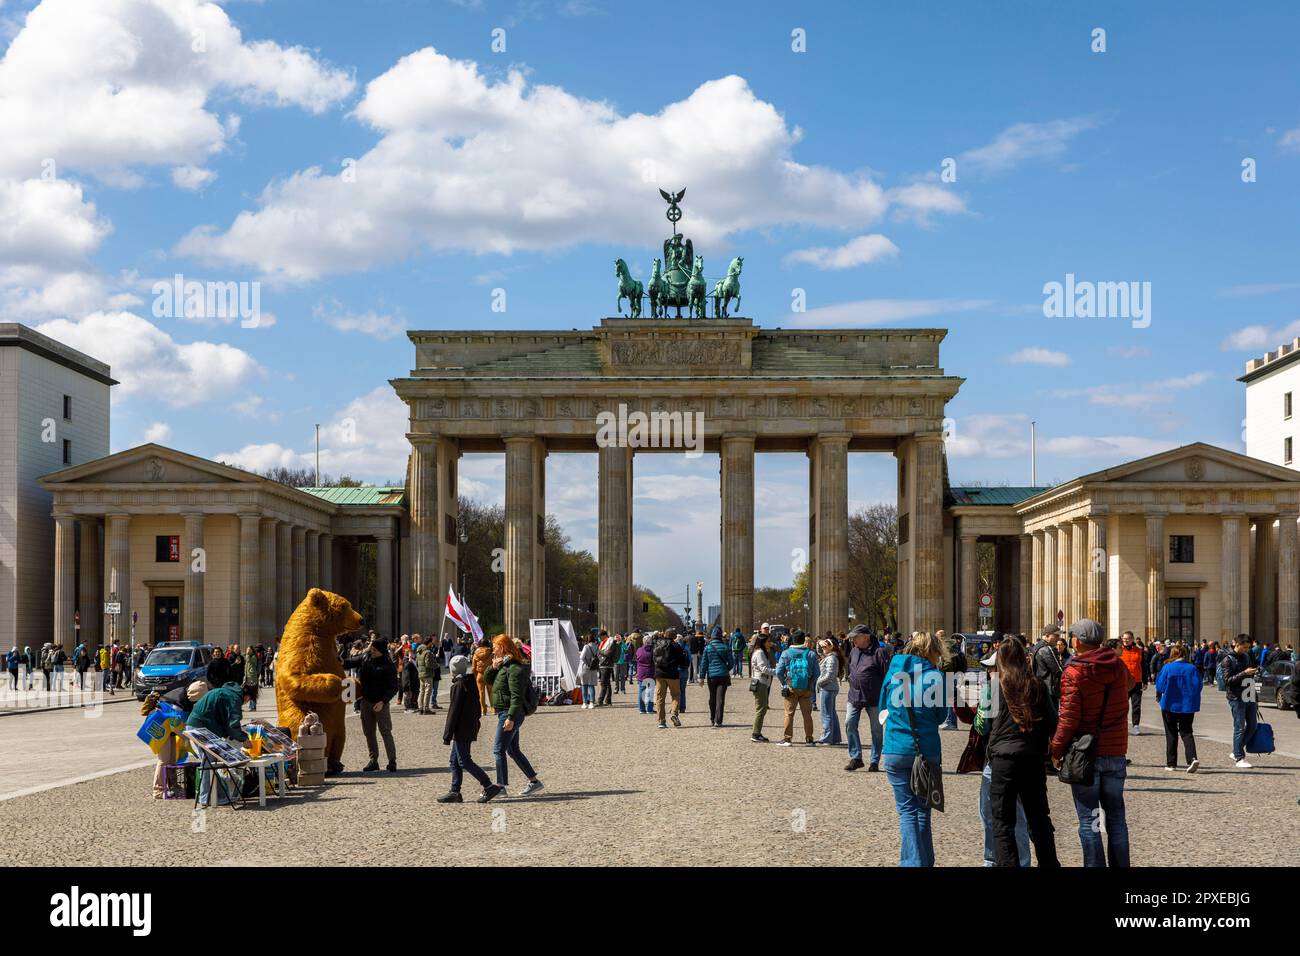 Turisti a Pariser Platz di fronte alla porta di Brandeburgo, Berlino, Germania. Touristen auf dem Pariser Platz vor dem Brandenburger Tor, Berlino, Deutschlan Foto Stock